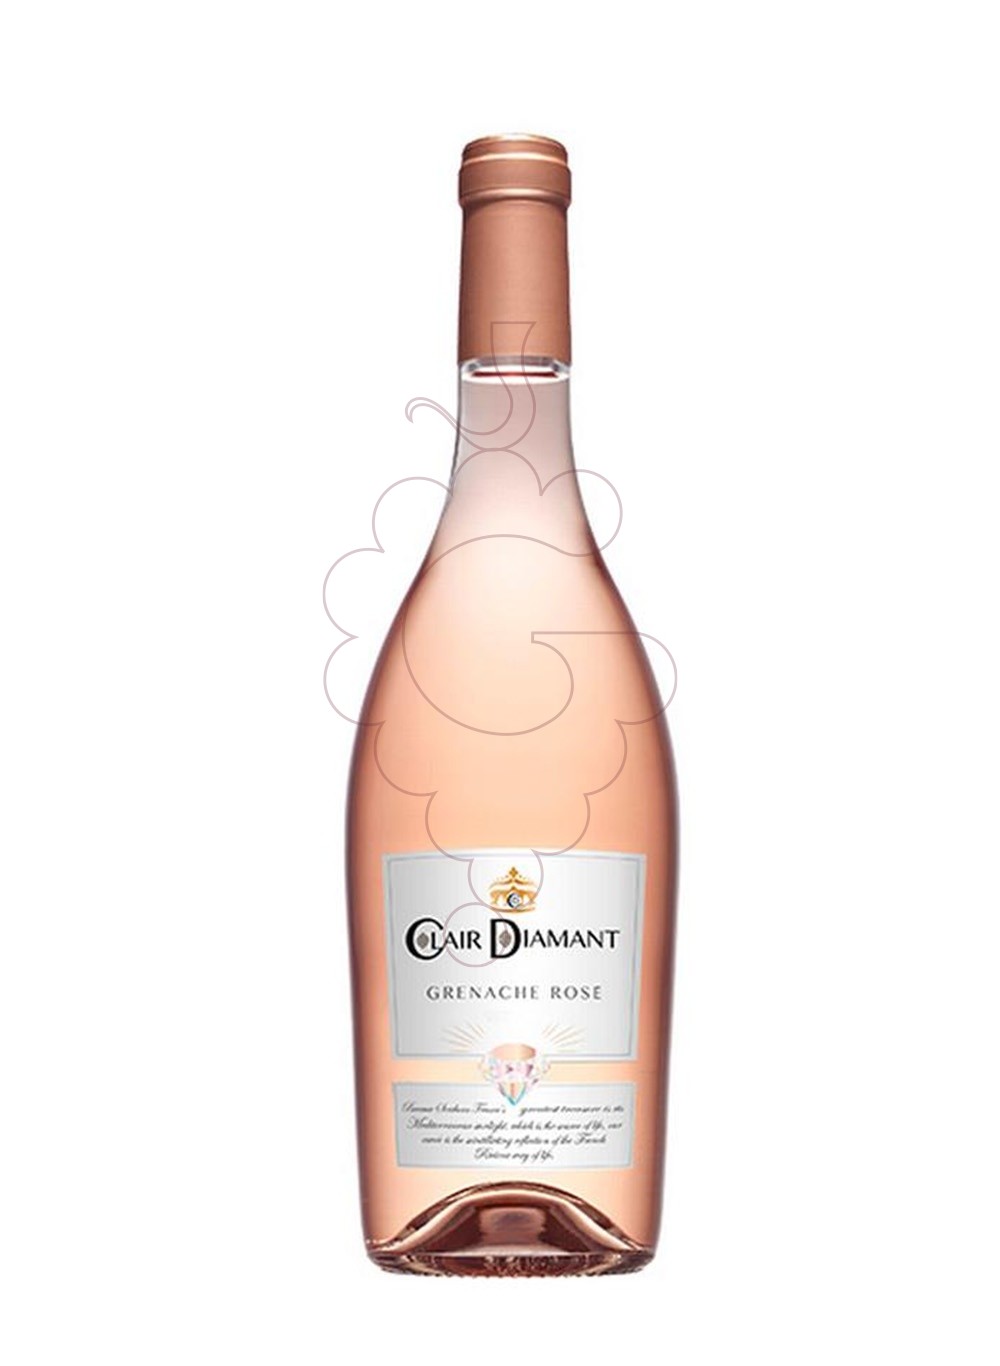 Photo Clair Diamant Grenache Rosé vin rosé